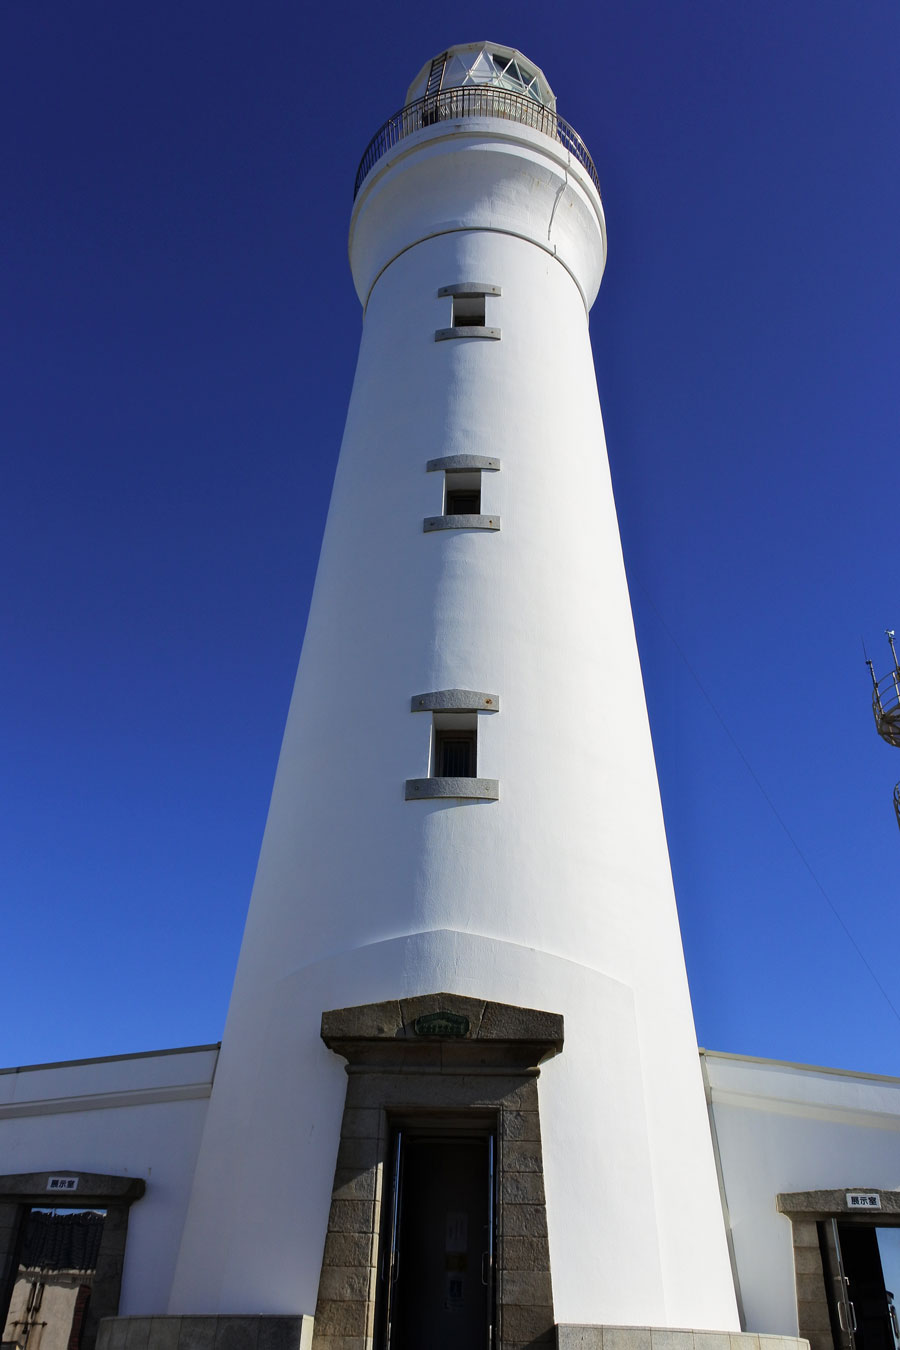 日本が世界に誇る美しき灯台、犬吠埼灯台。